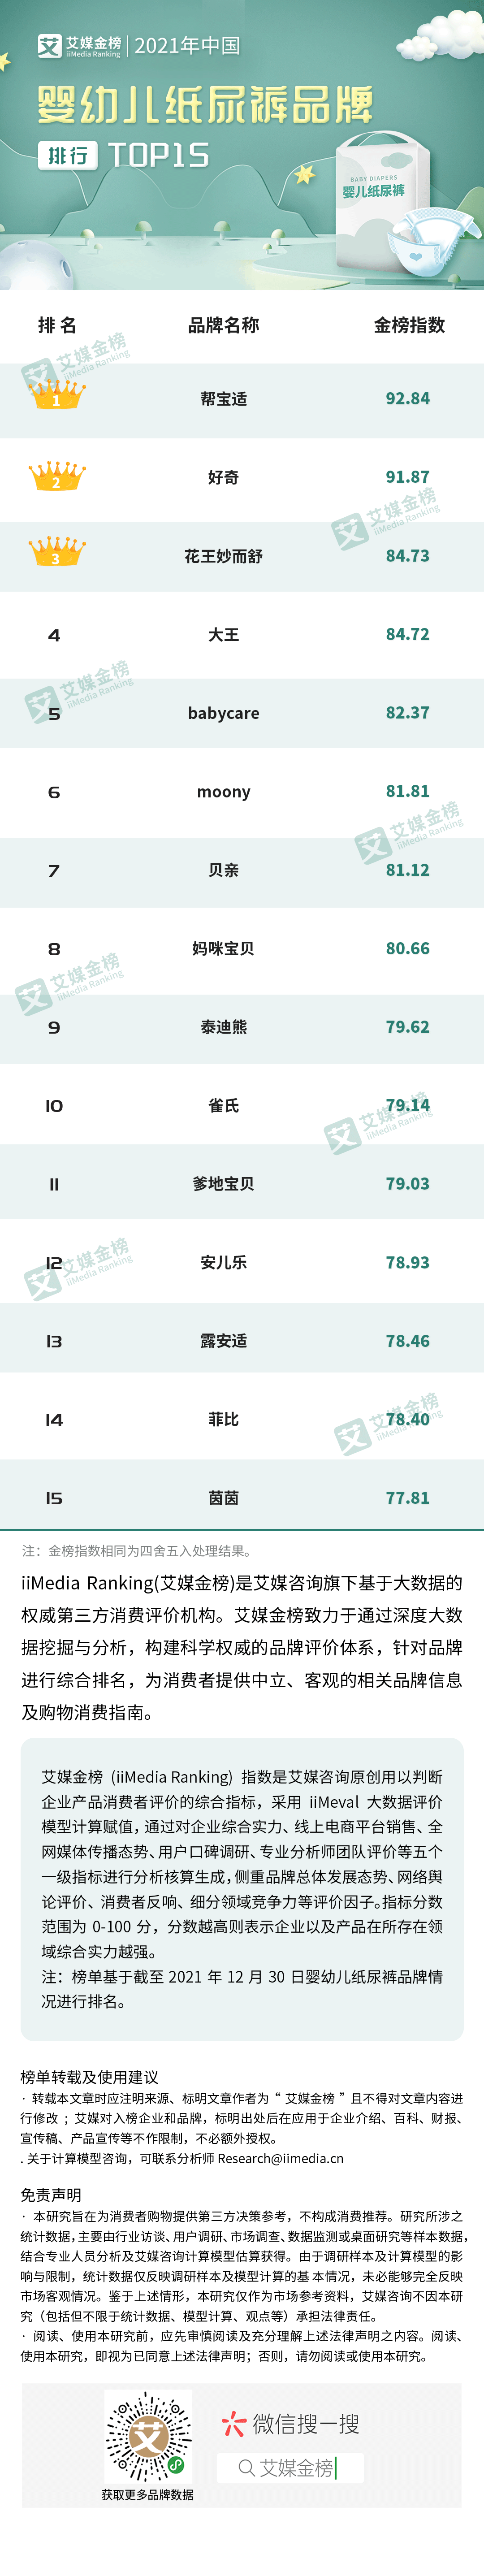 婴儿纸尿裤排行榜10强_艾媒金榜|2021年中国婴幼儿纸尿裤品牌排行Top15